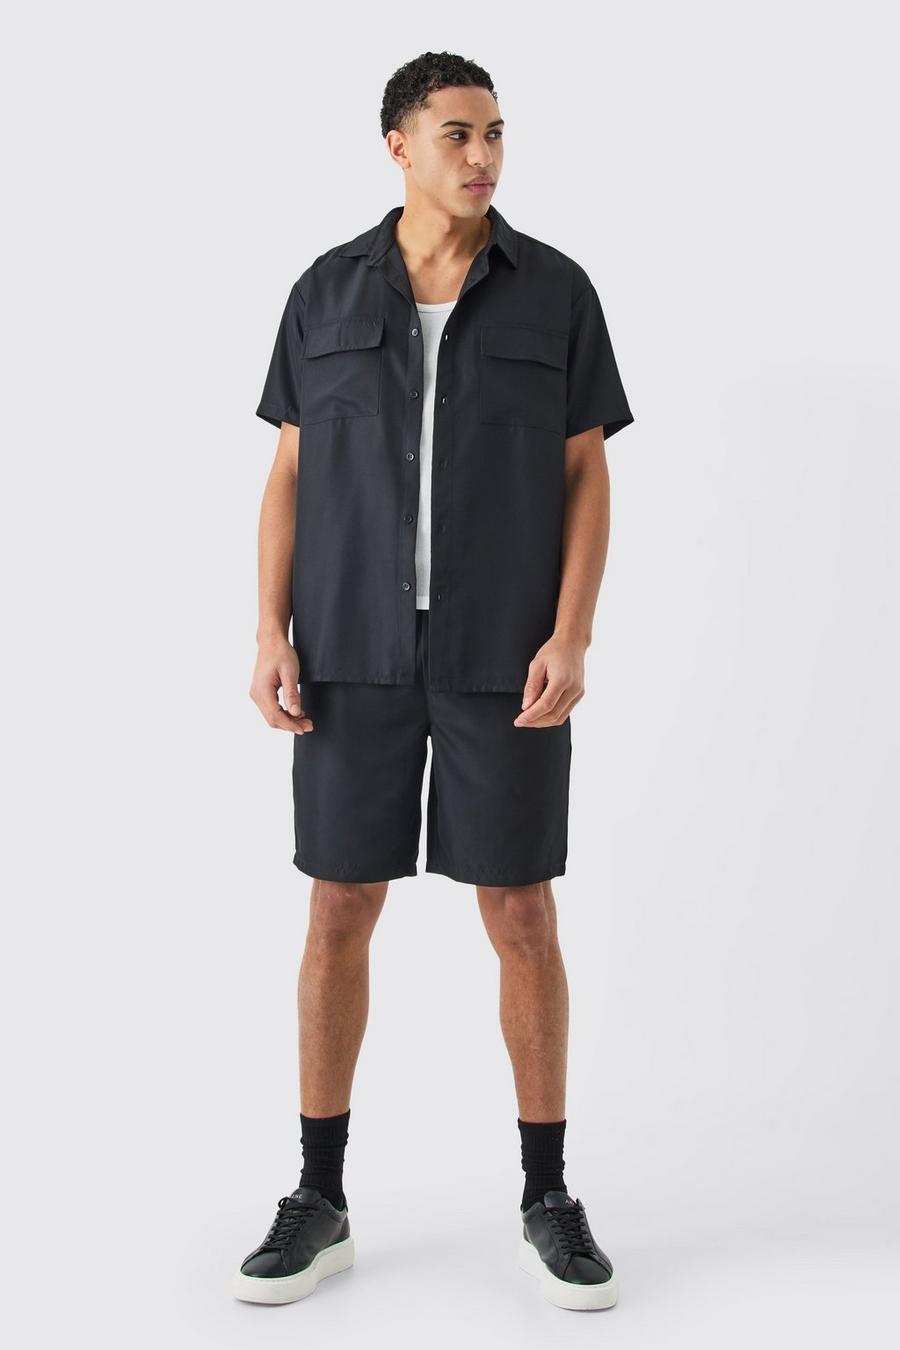 Black Short Sleeve Soft Twill Overshirt And Short Set  image number 1